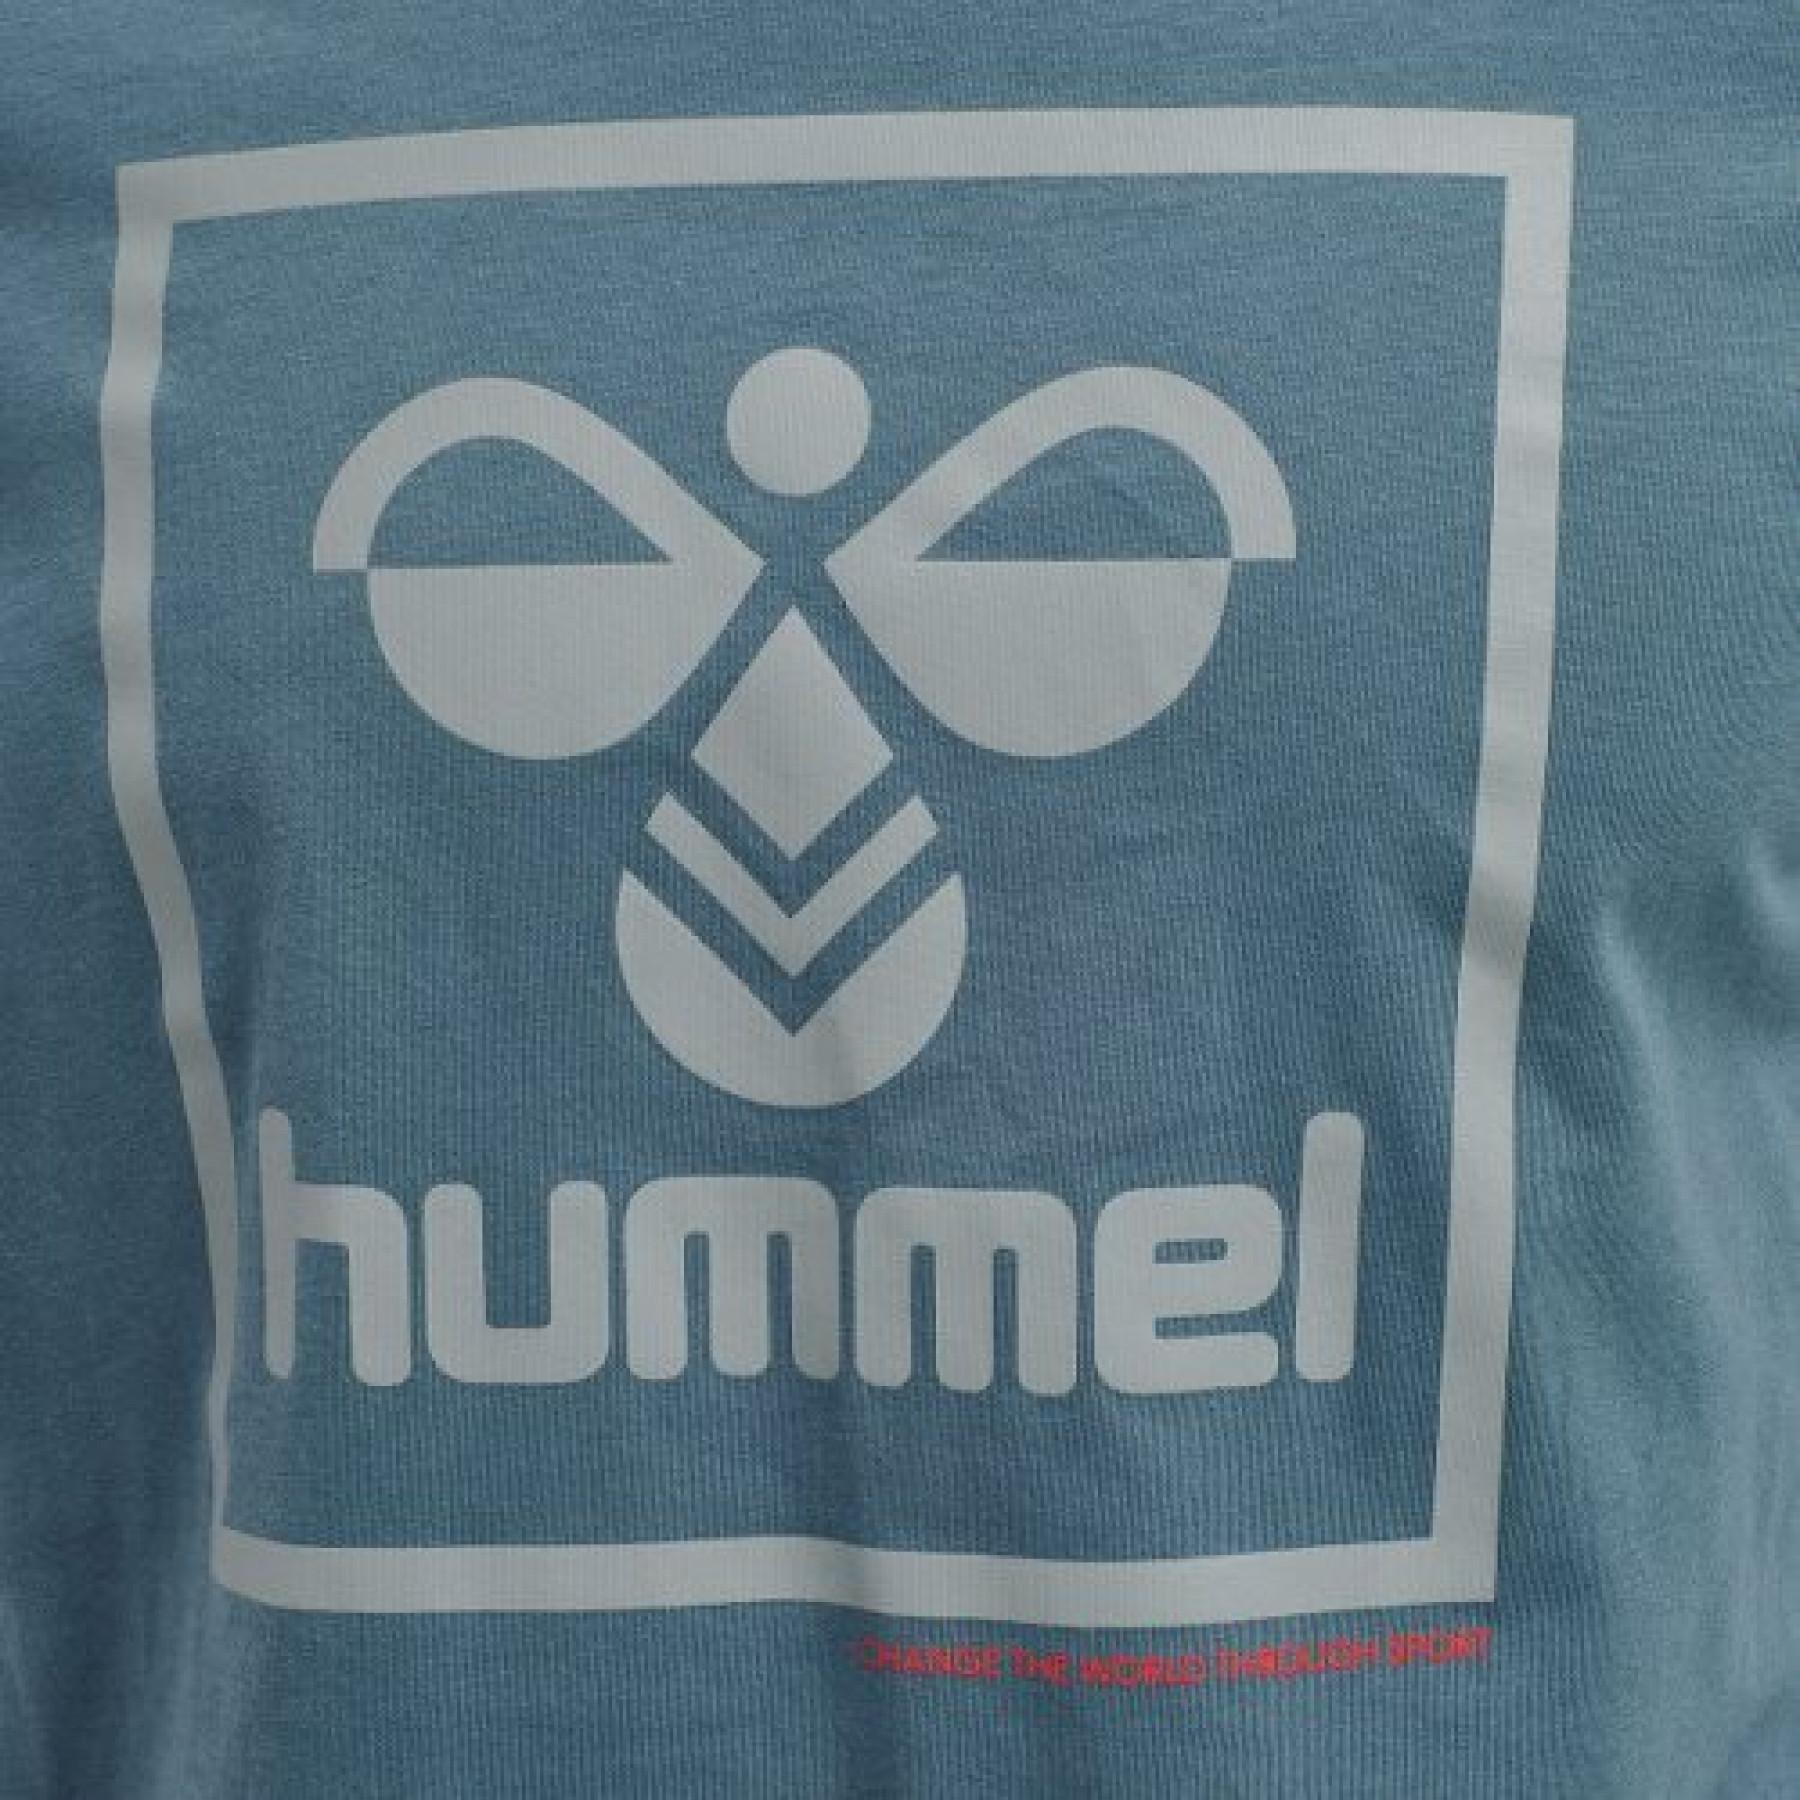 Camiseta de manga corta Hummel